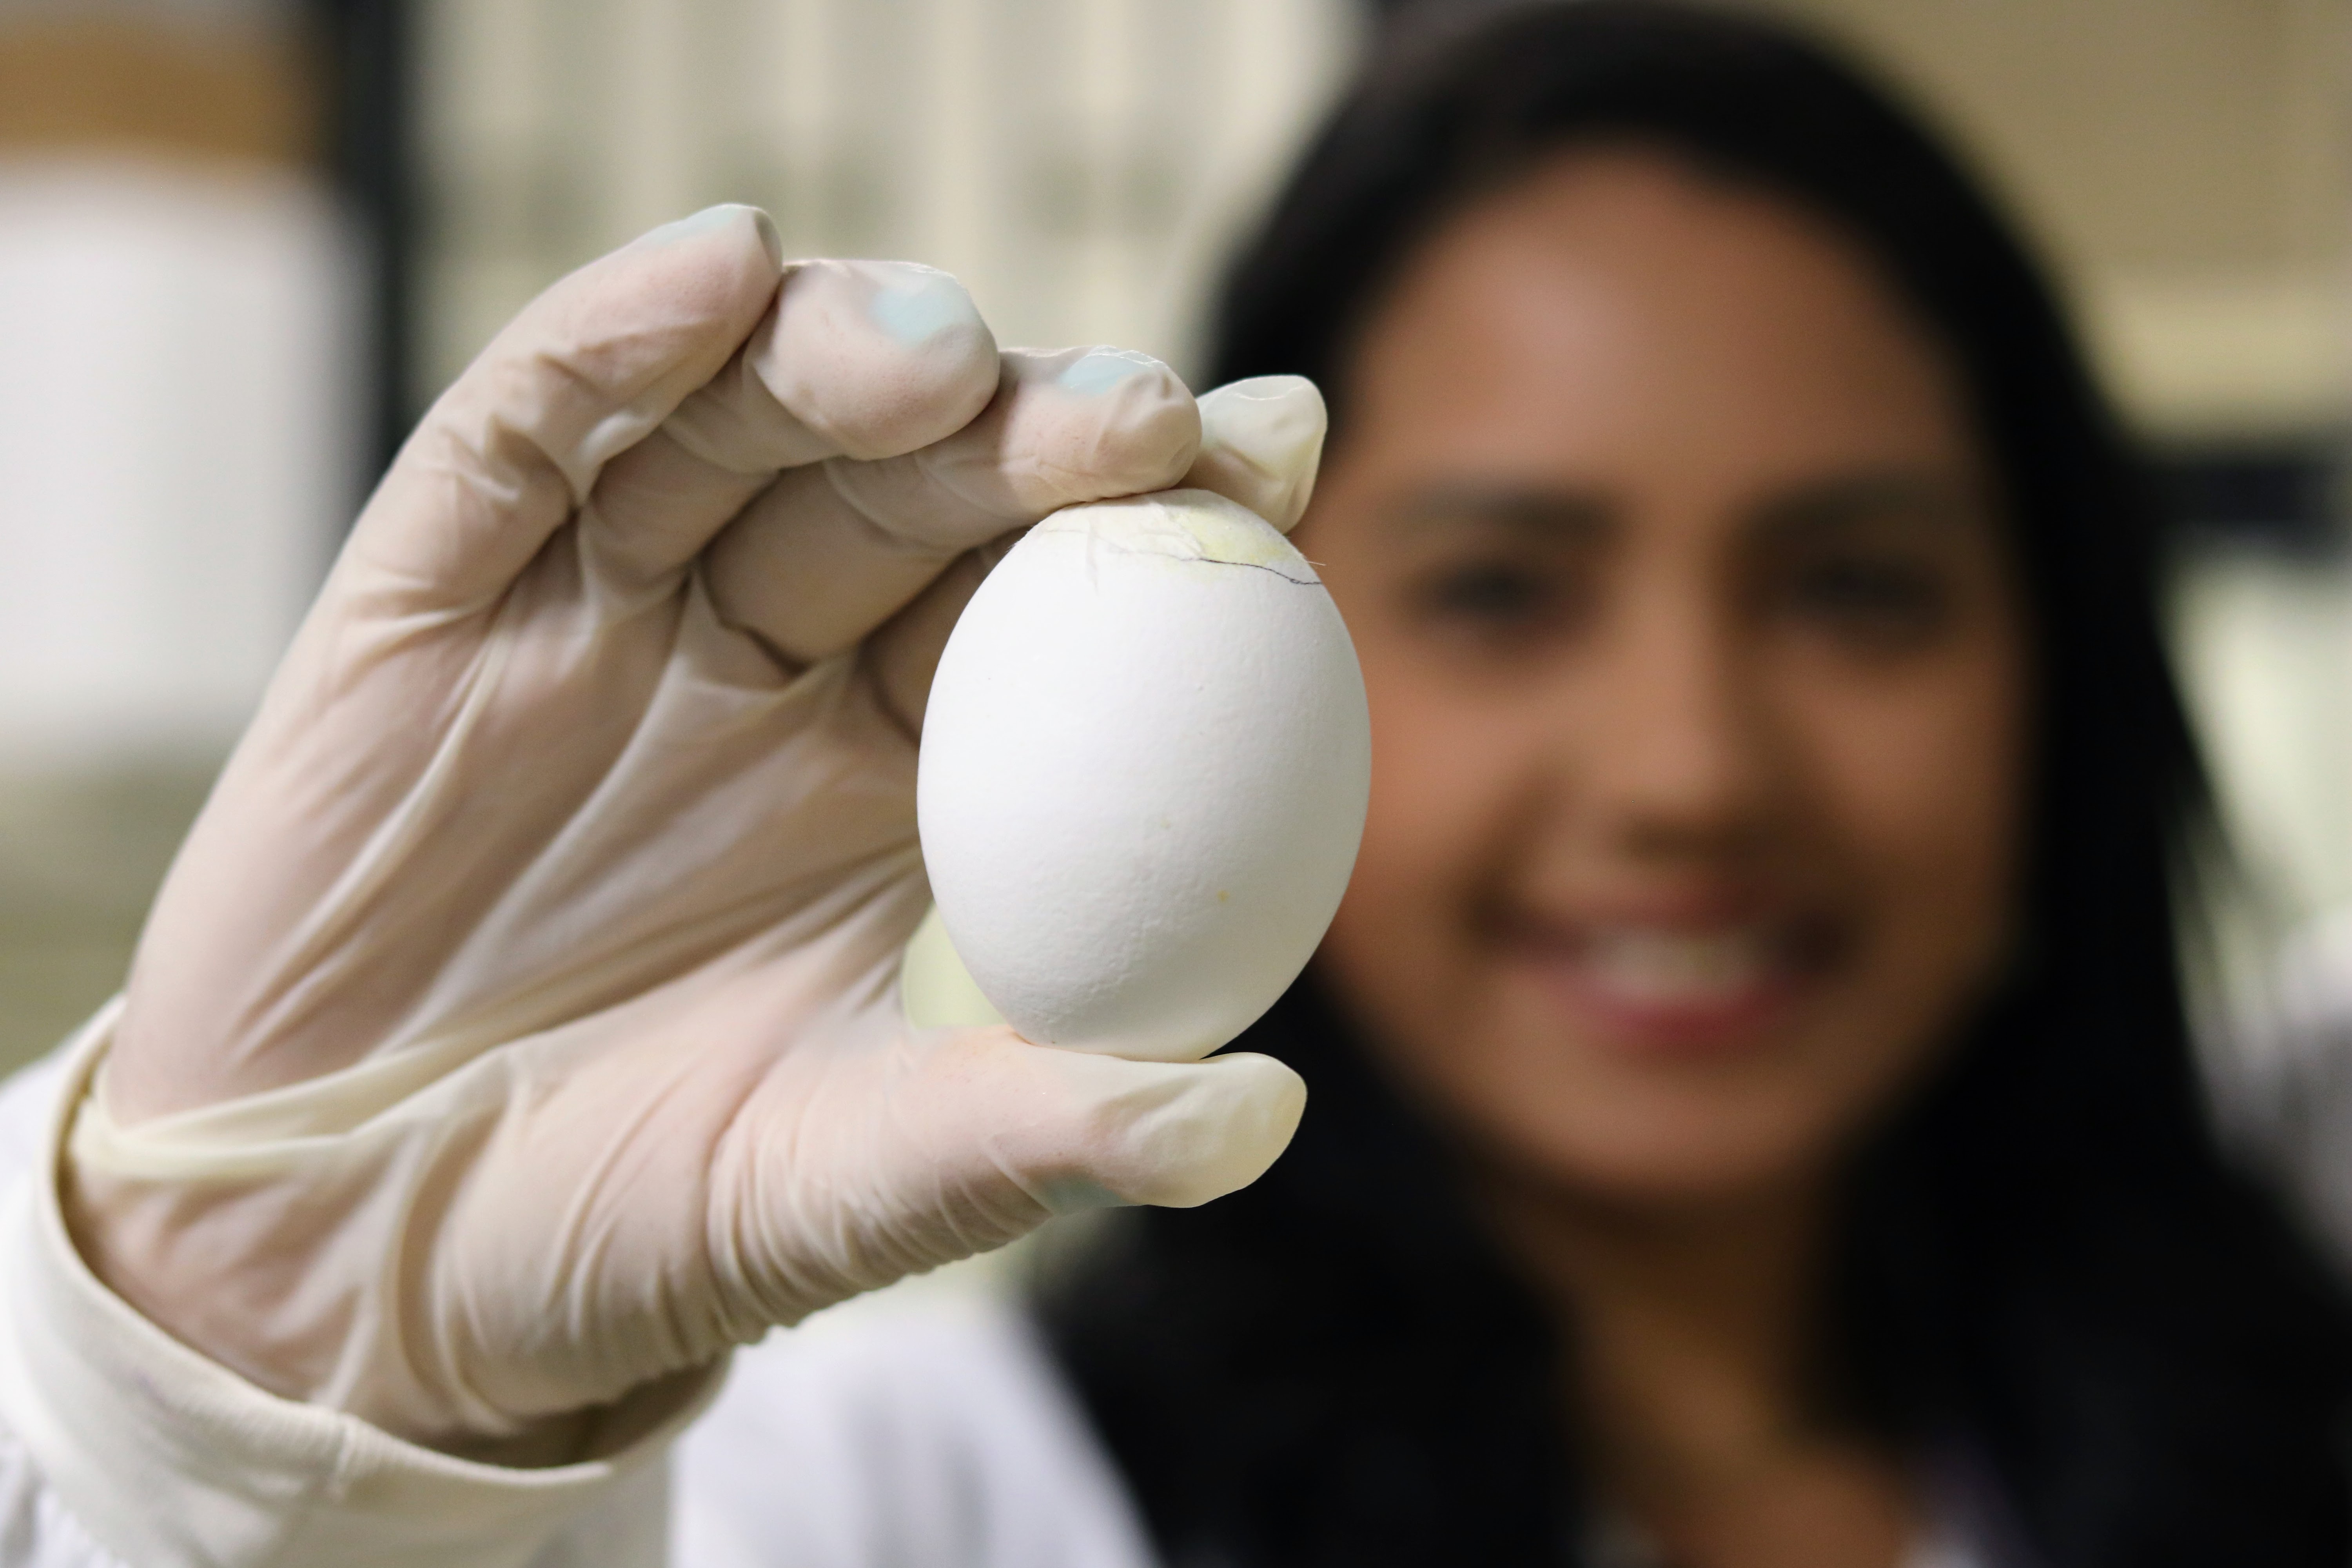 Imagem colorida e desfocada ao fundo mostra mulher de cabelos escuros sorrindo, enquanto segura um ovo destacando-o à frente